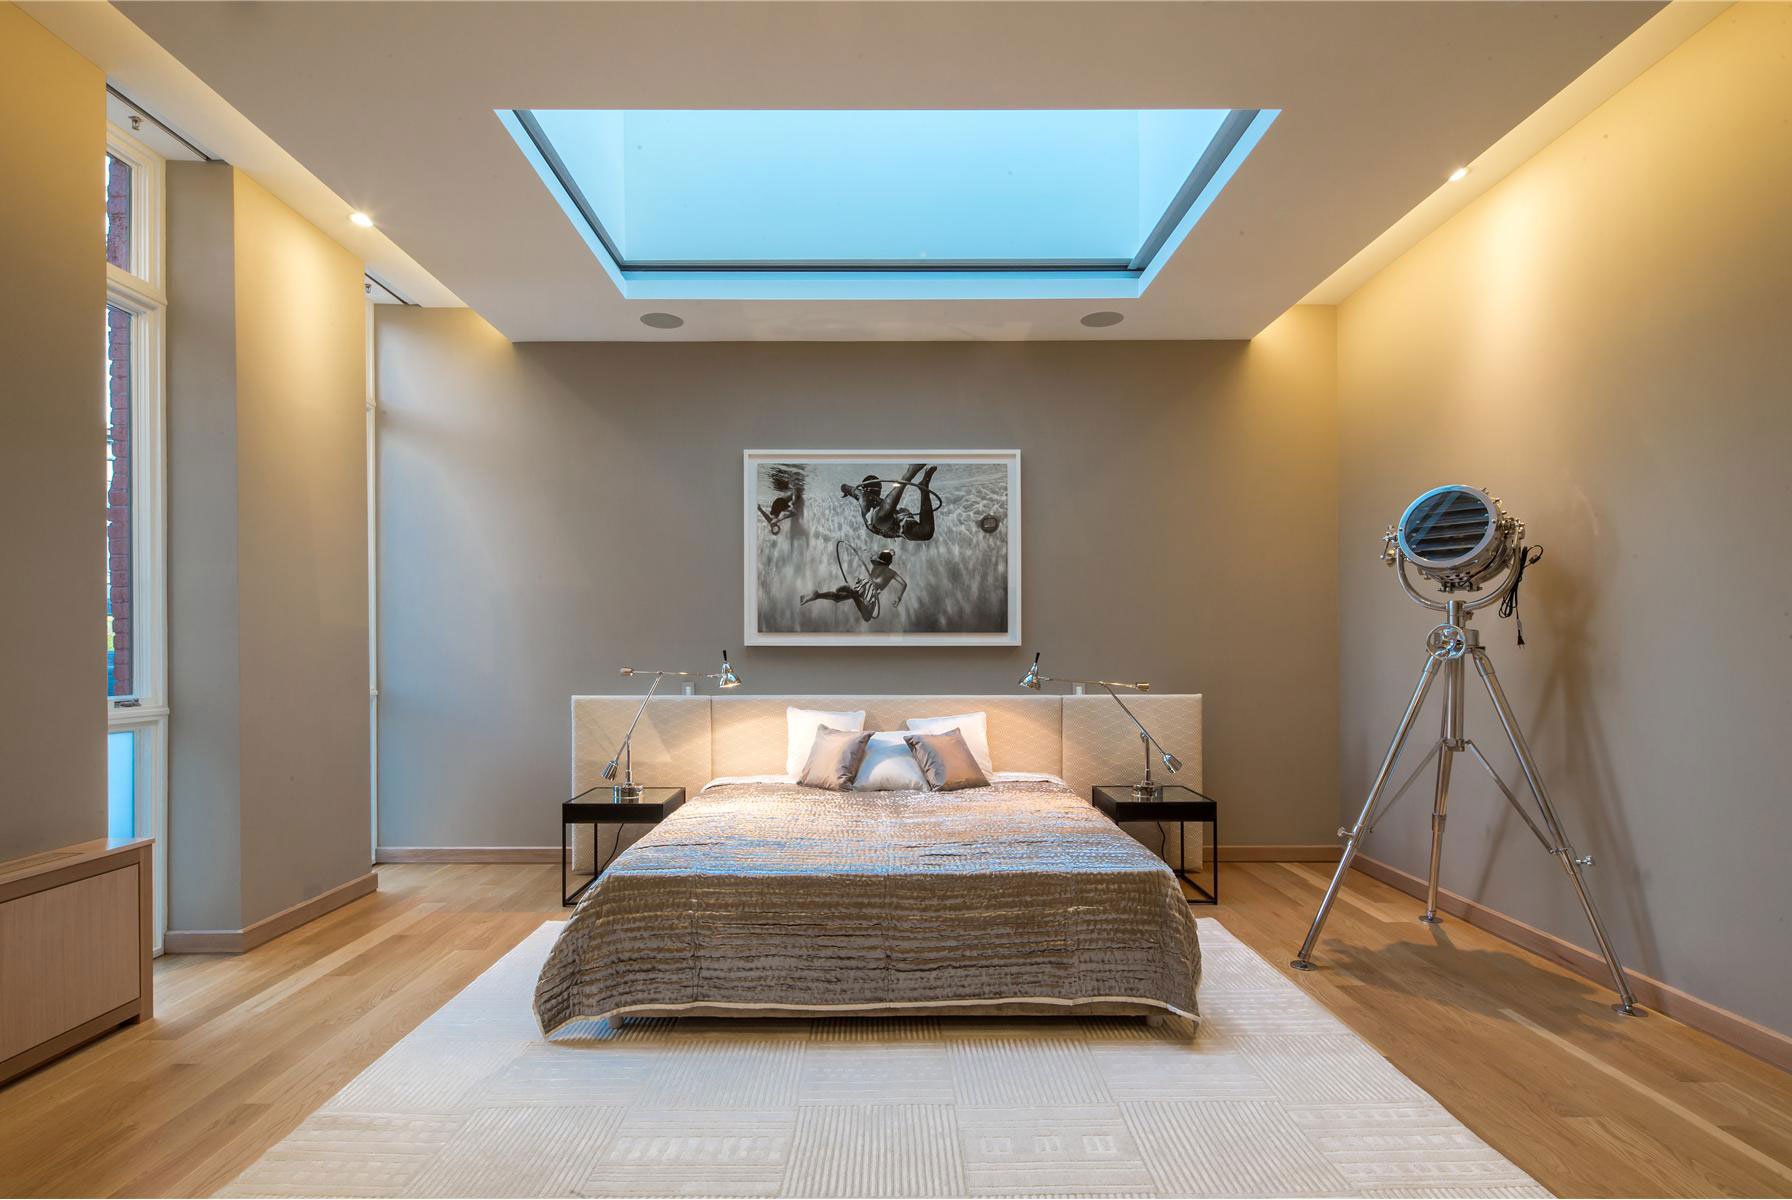 Потолки из гипсокартона для спальни: фото, дизайн, виды форм и конструкций